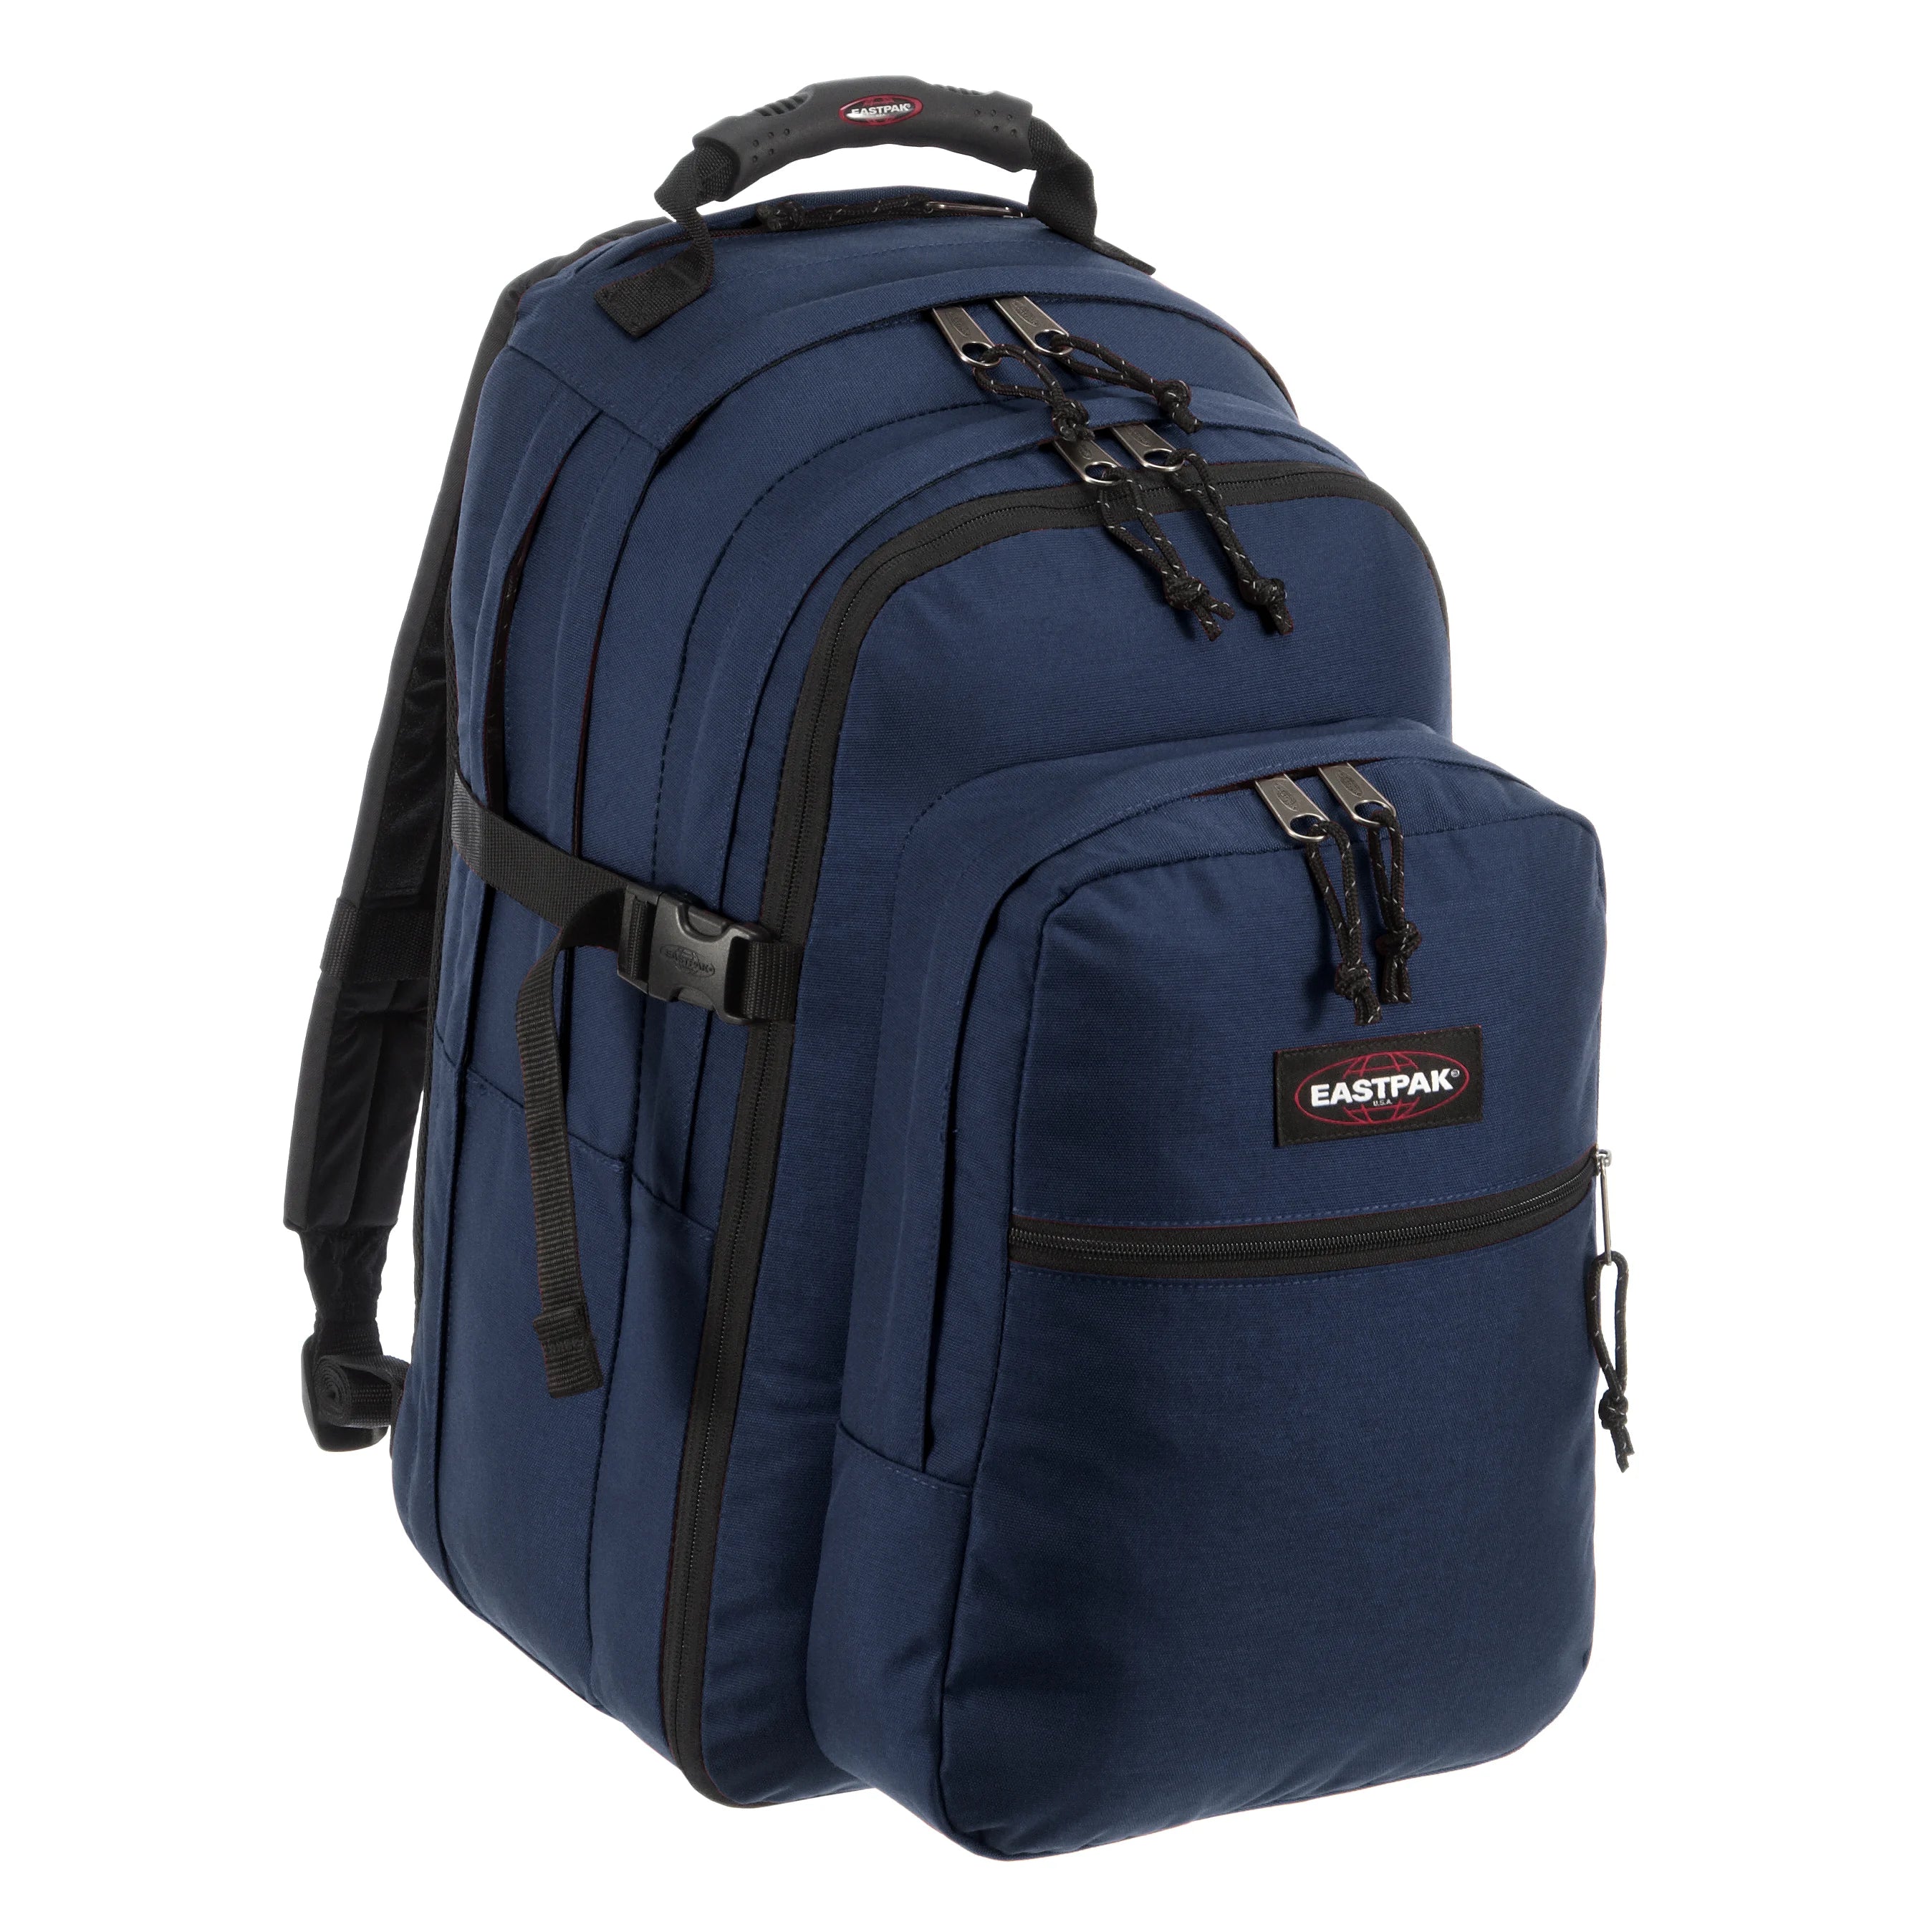 Eastpak Authentic Re-Check Tutor sac à dos avec compartiment pour ordinateur portable 48 cm - bleu marine